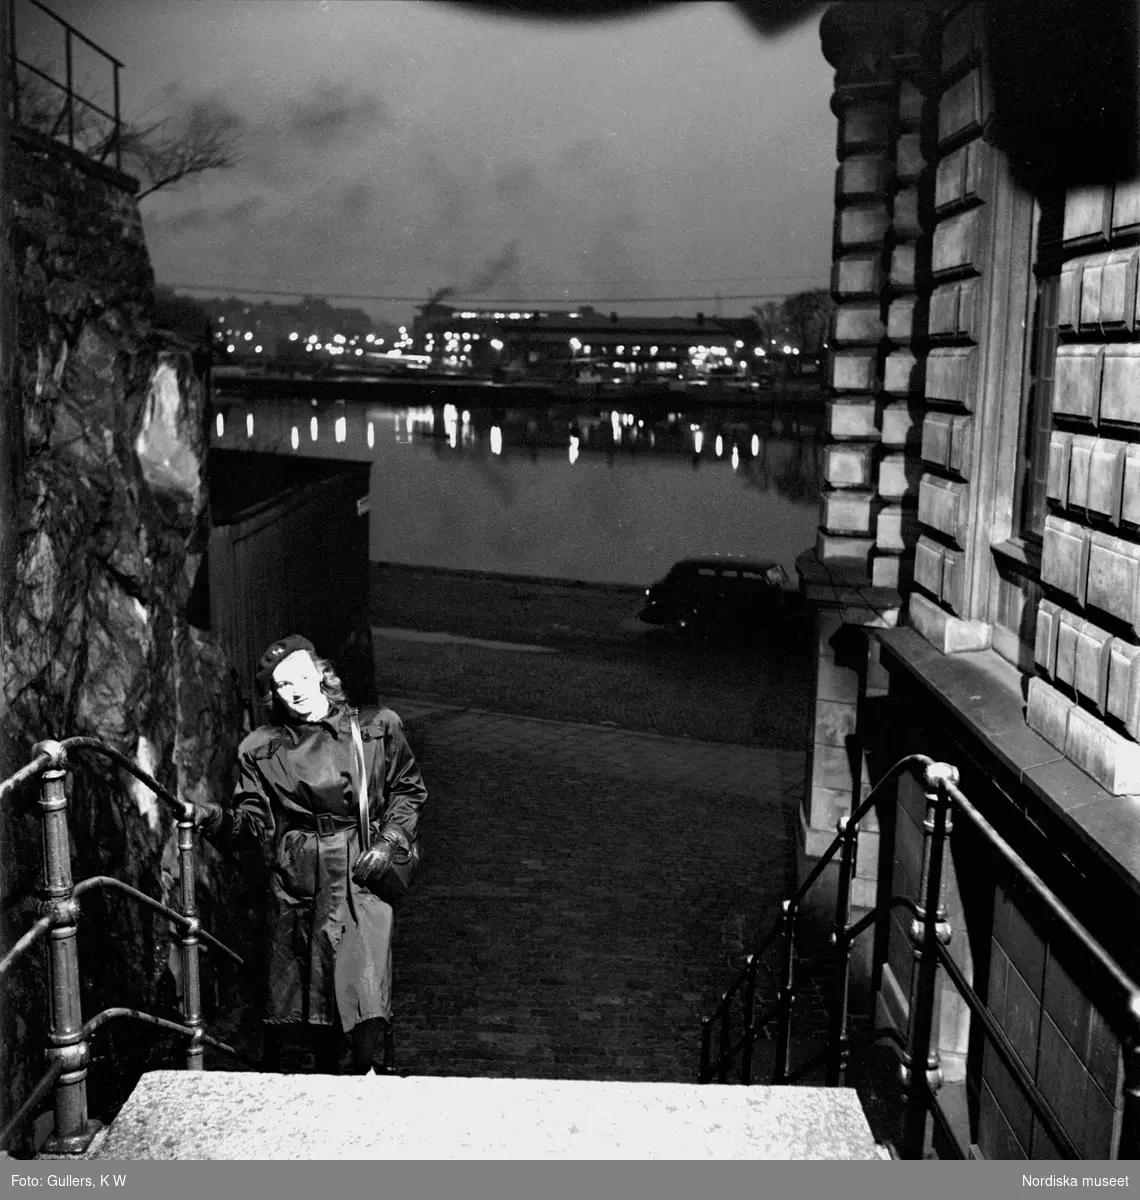 Stockholm. En ung kvinna går uppför trappa i förgrunden. Stadens ljus speglar sig i vattnet i bakgrunden.